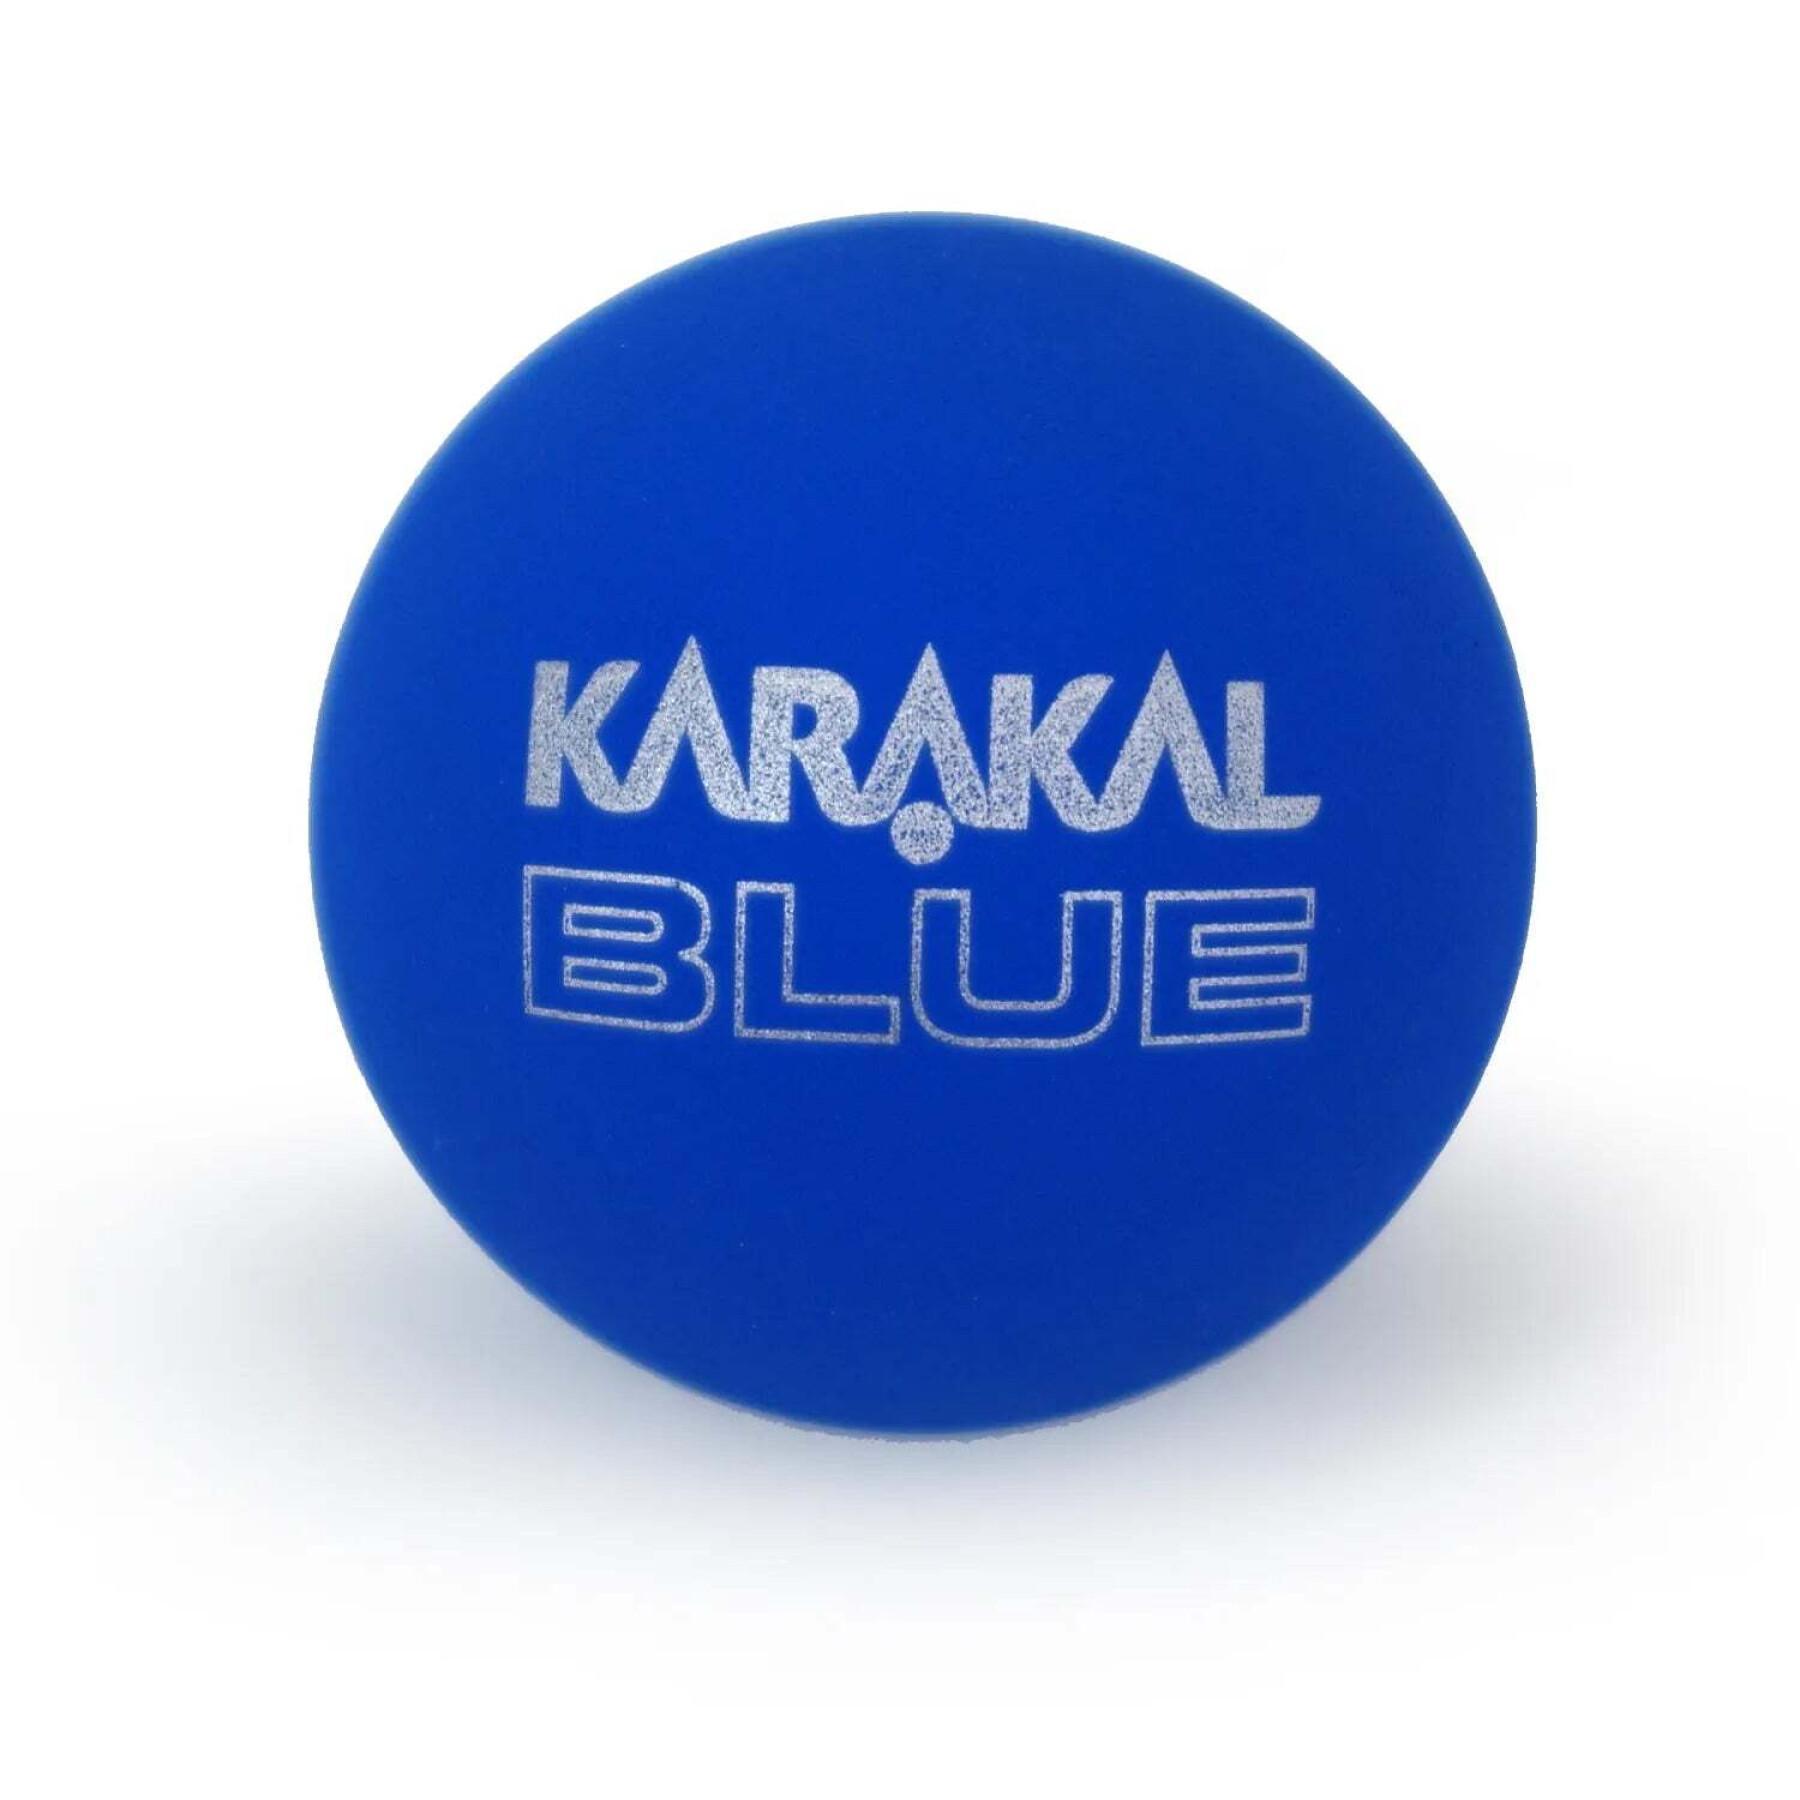 Lot de 2 balles de squash Karakal